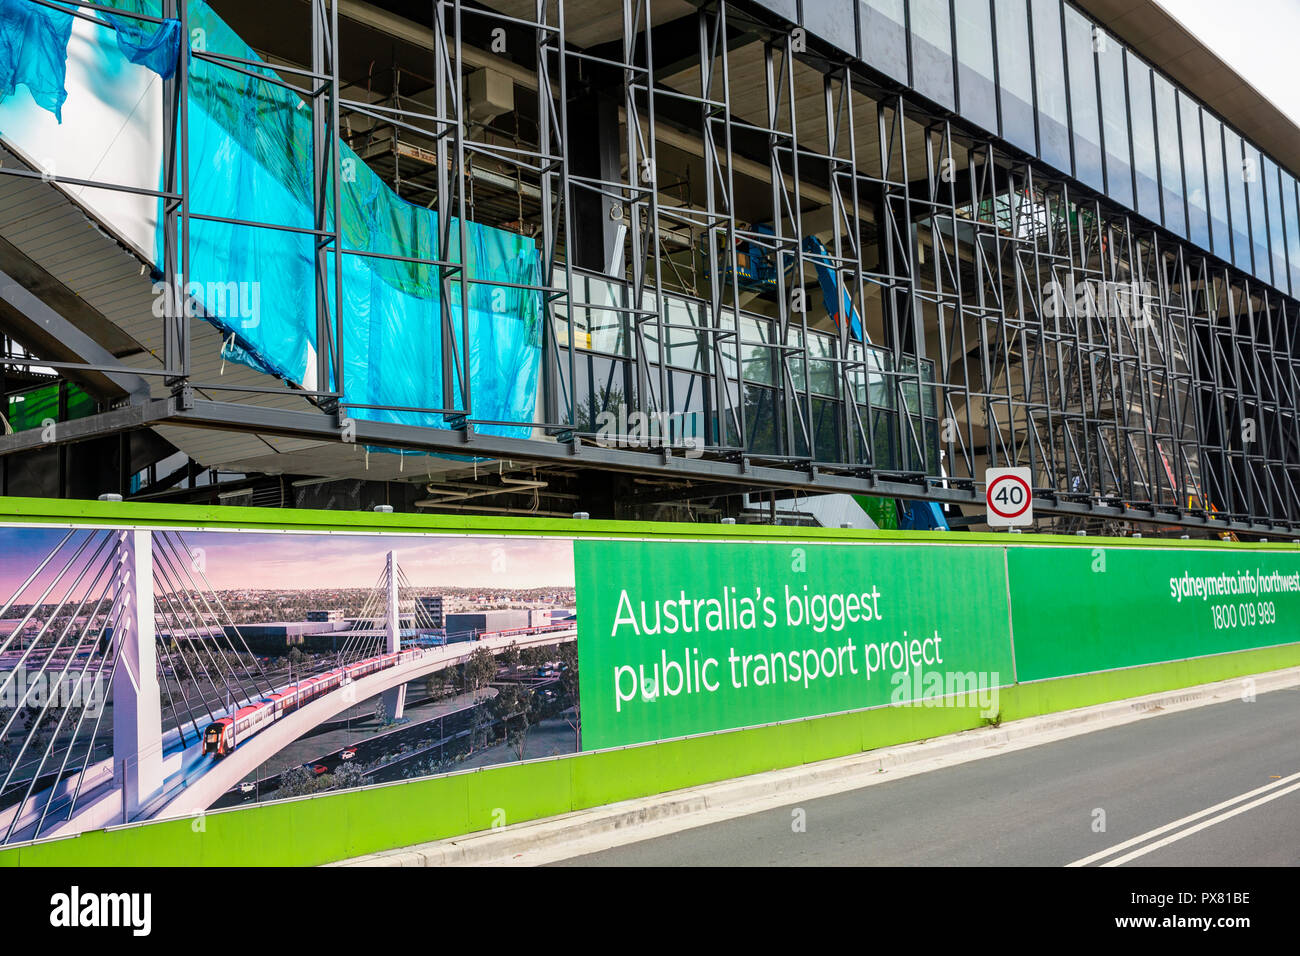 La costruzione della metropolitana di Sydney Rouse Hill metropolitana stazione ferroviaria in Australia pubblica più grande progetto di infrastrutture di trasporto,Sydney , Australia Foto Stock